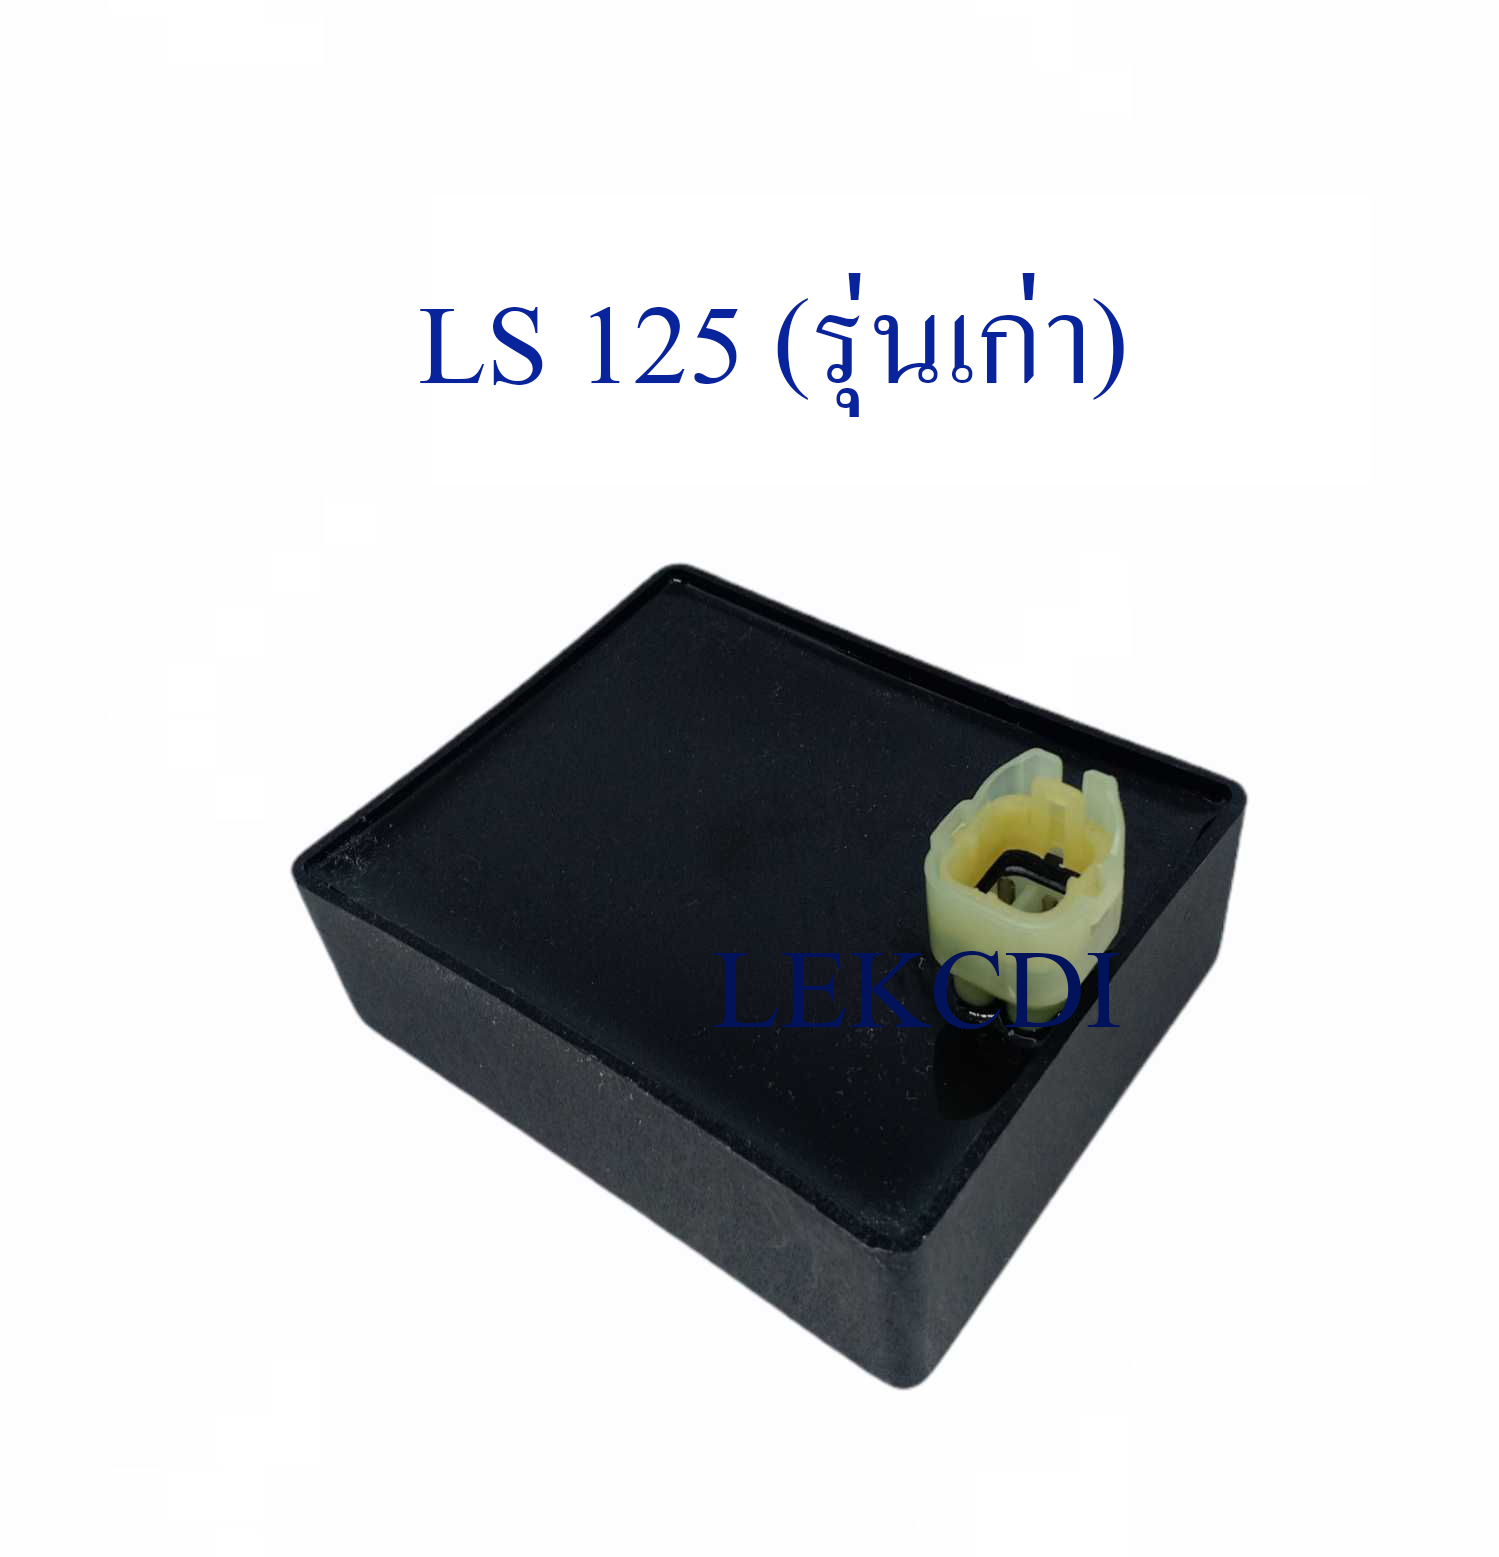 กล่องไฟ กล่องซีดีไอ CDI LS 125 (รุ่นเก่า) (LEK CDI)